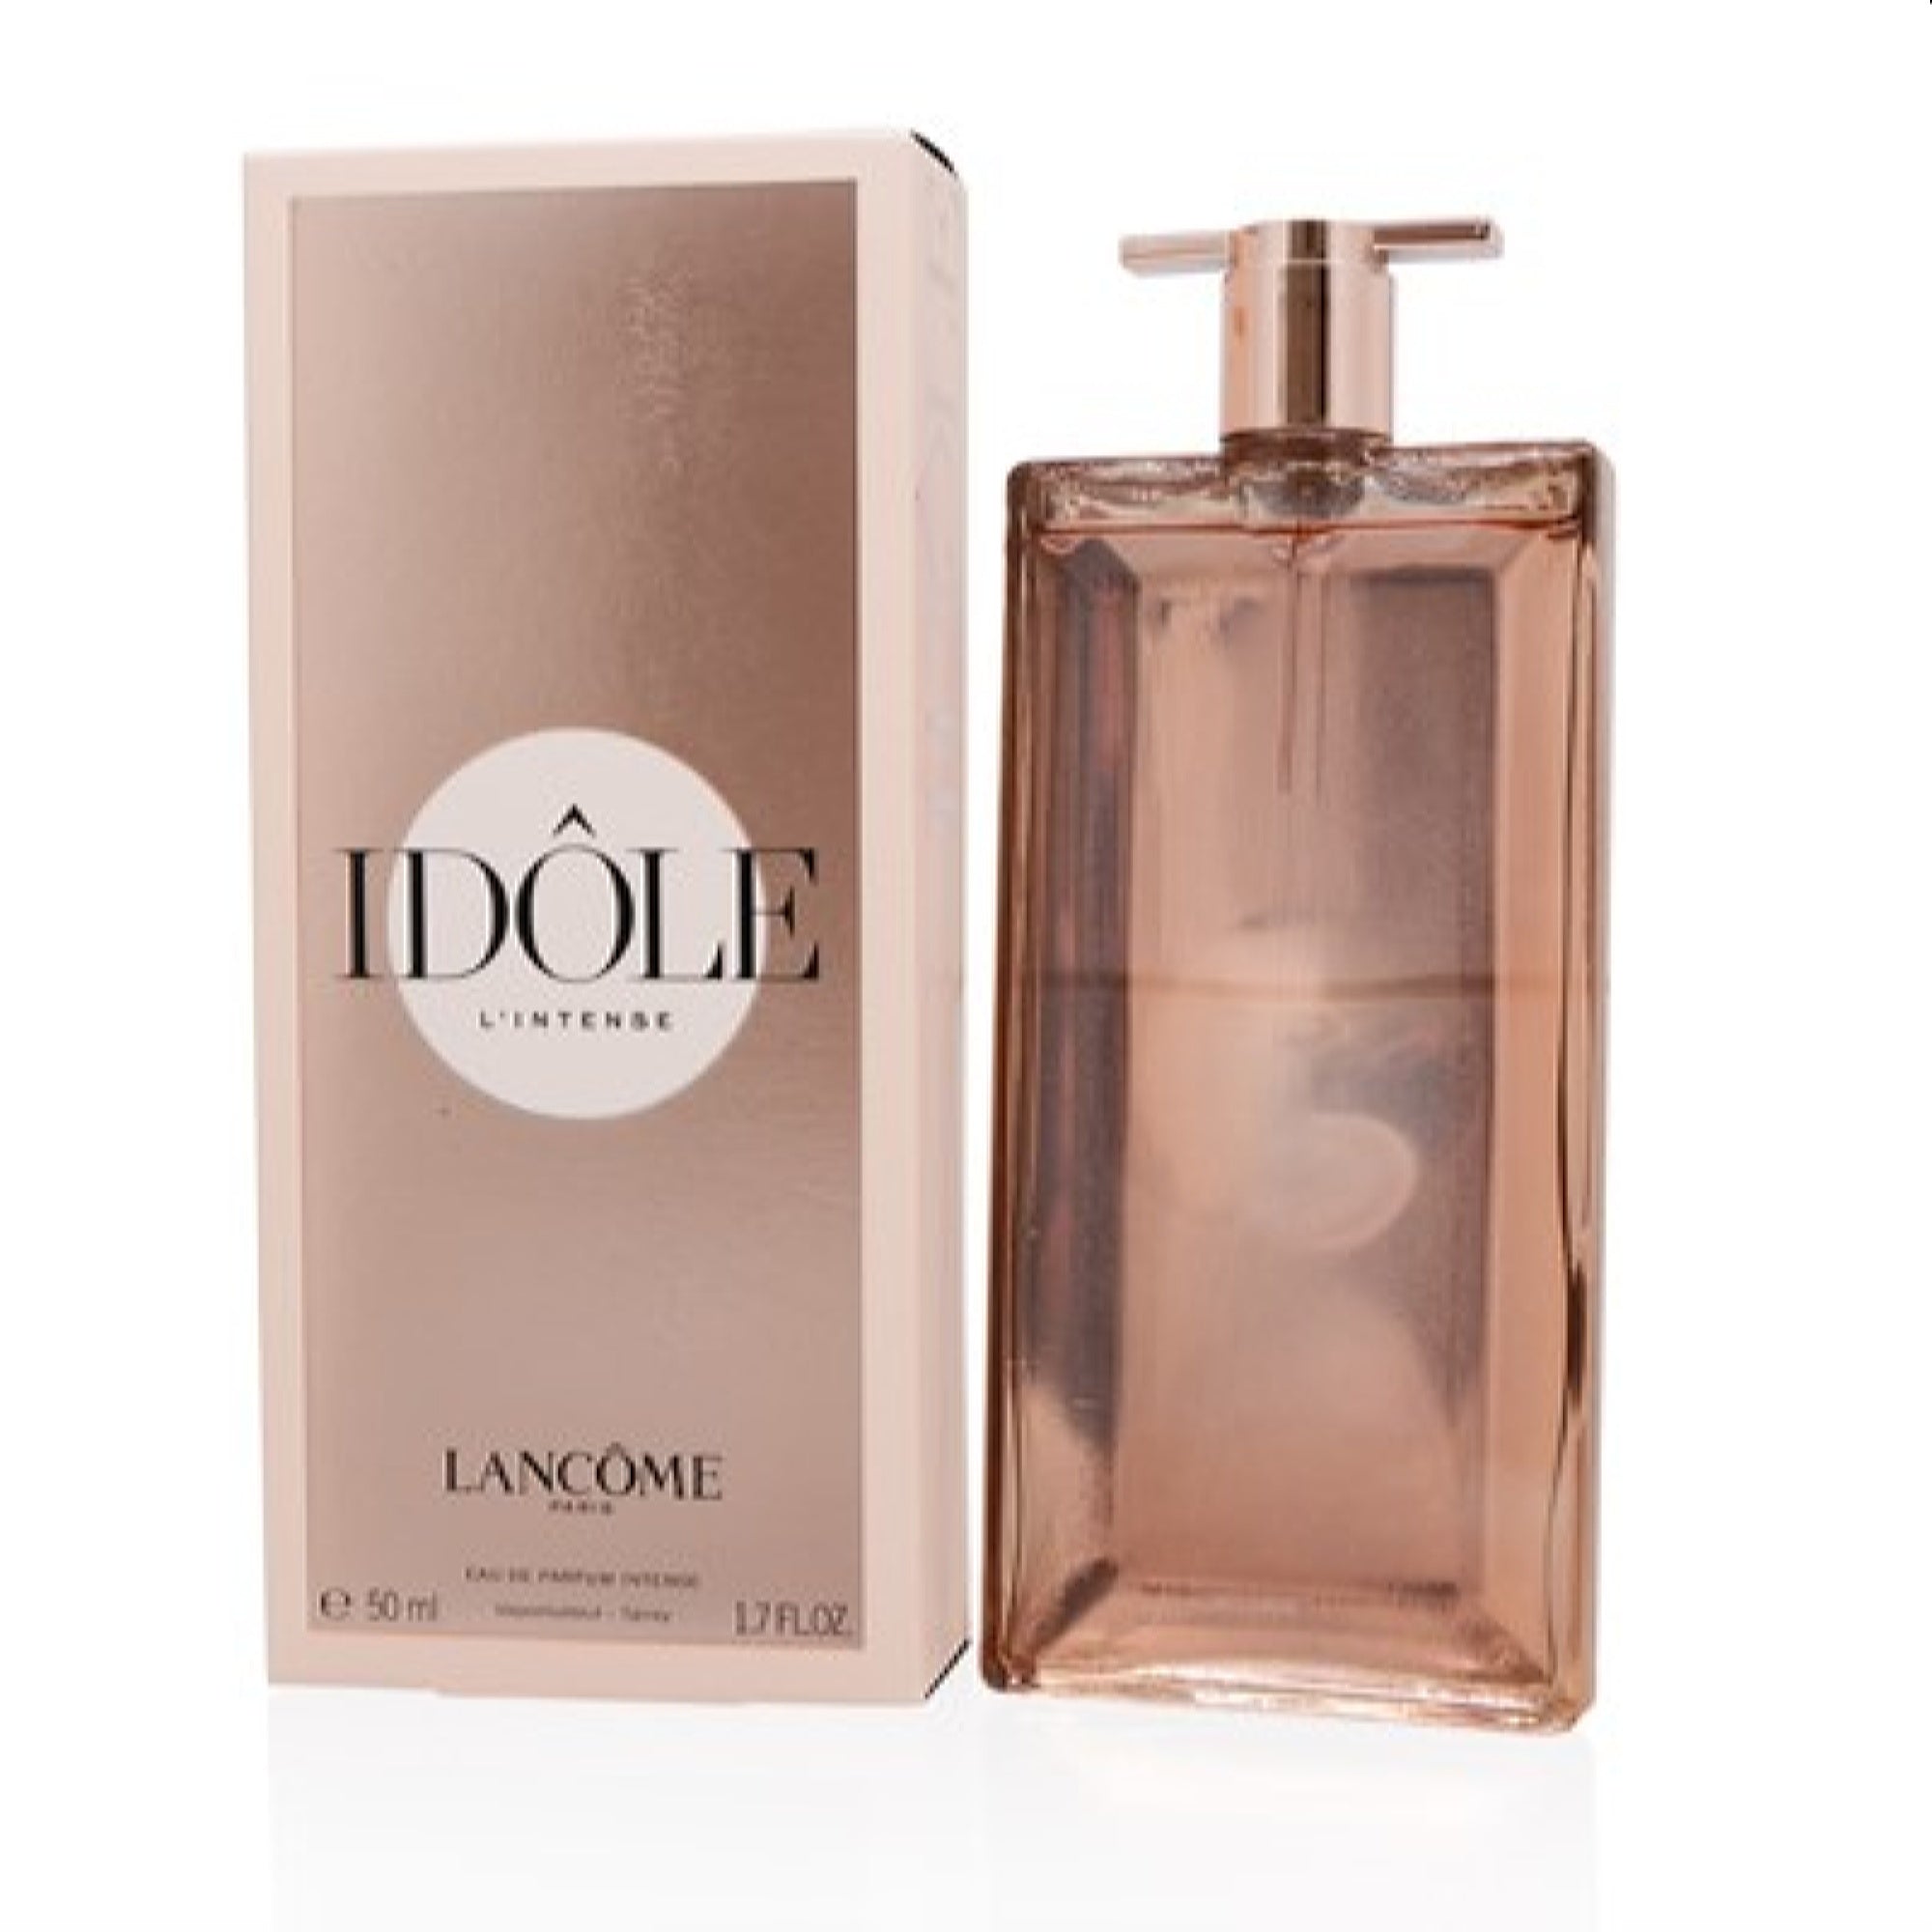 Lancome Ladies Idole Now EDP 1.7 oz Fragrances 3614273927314